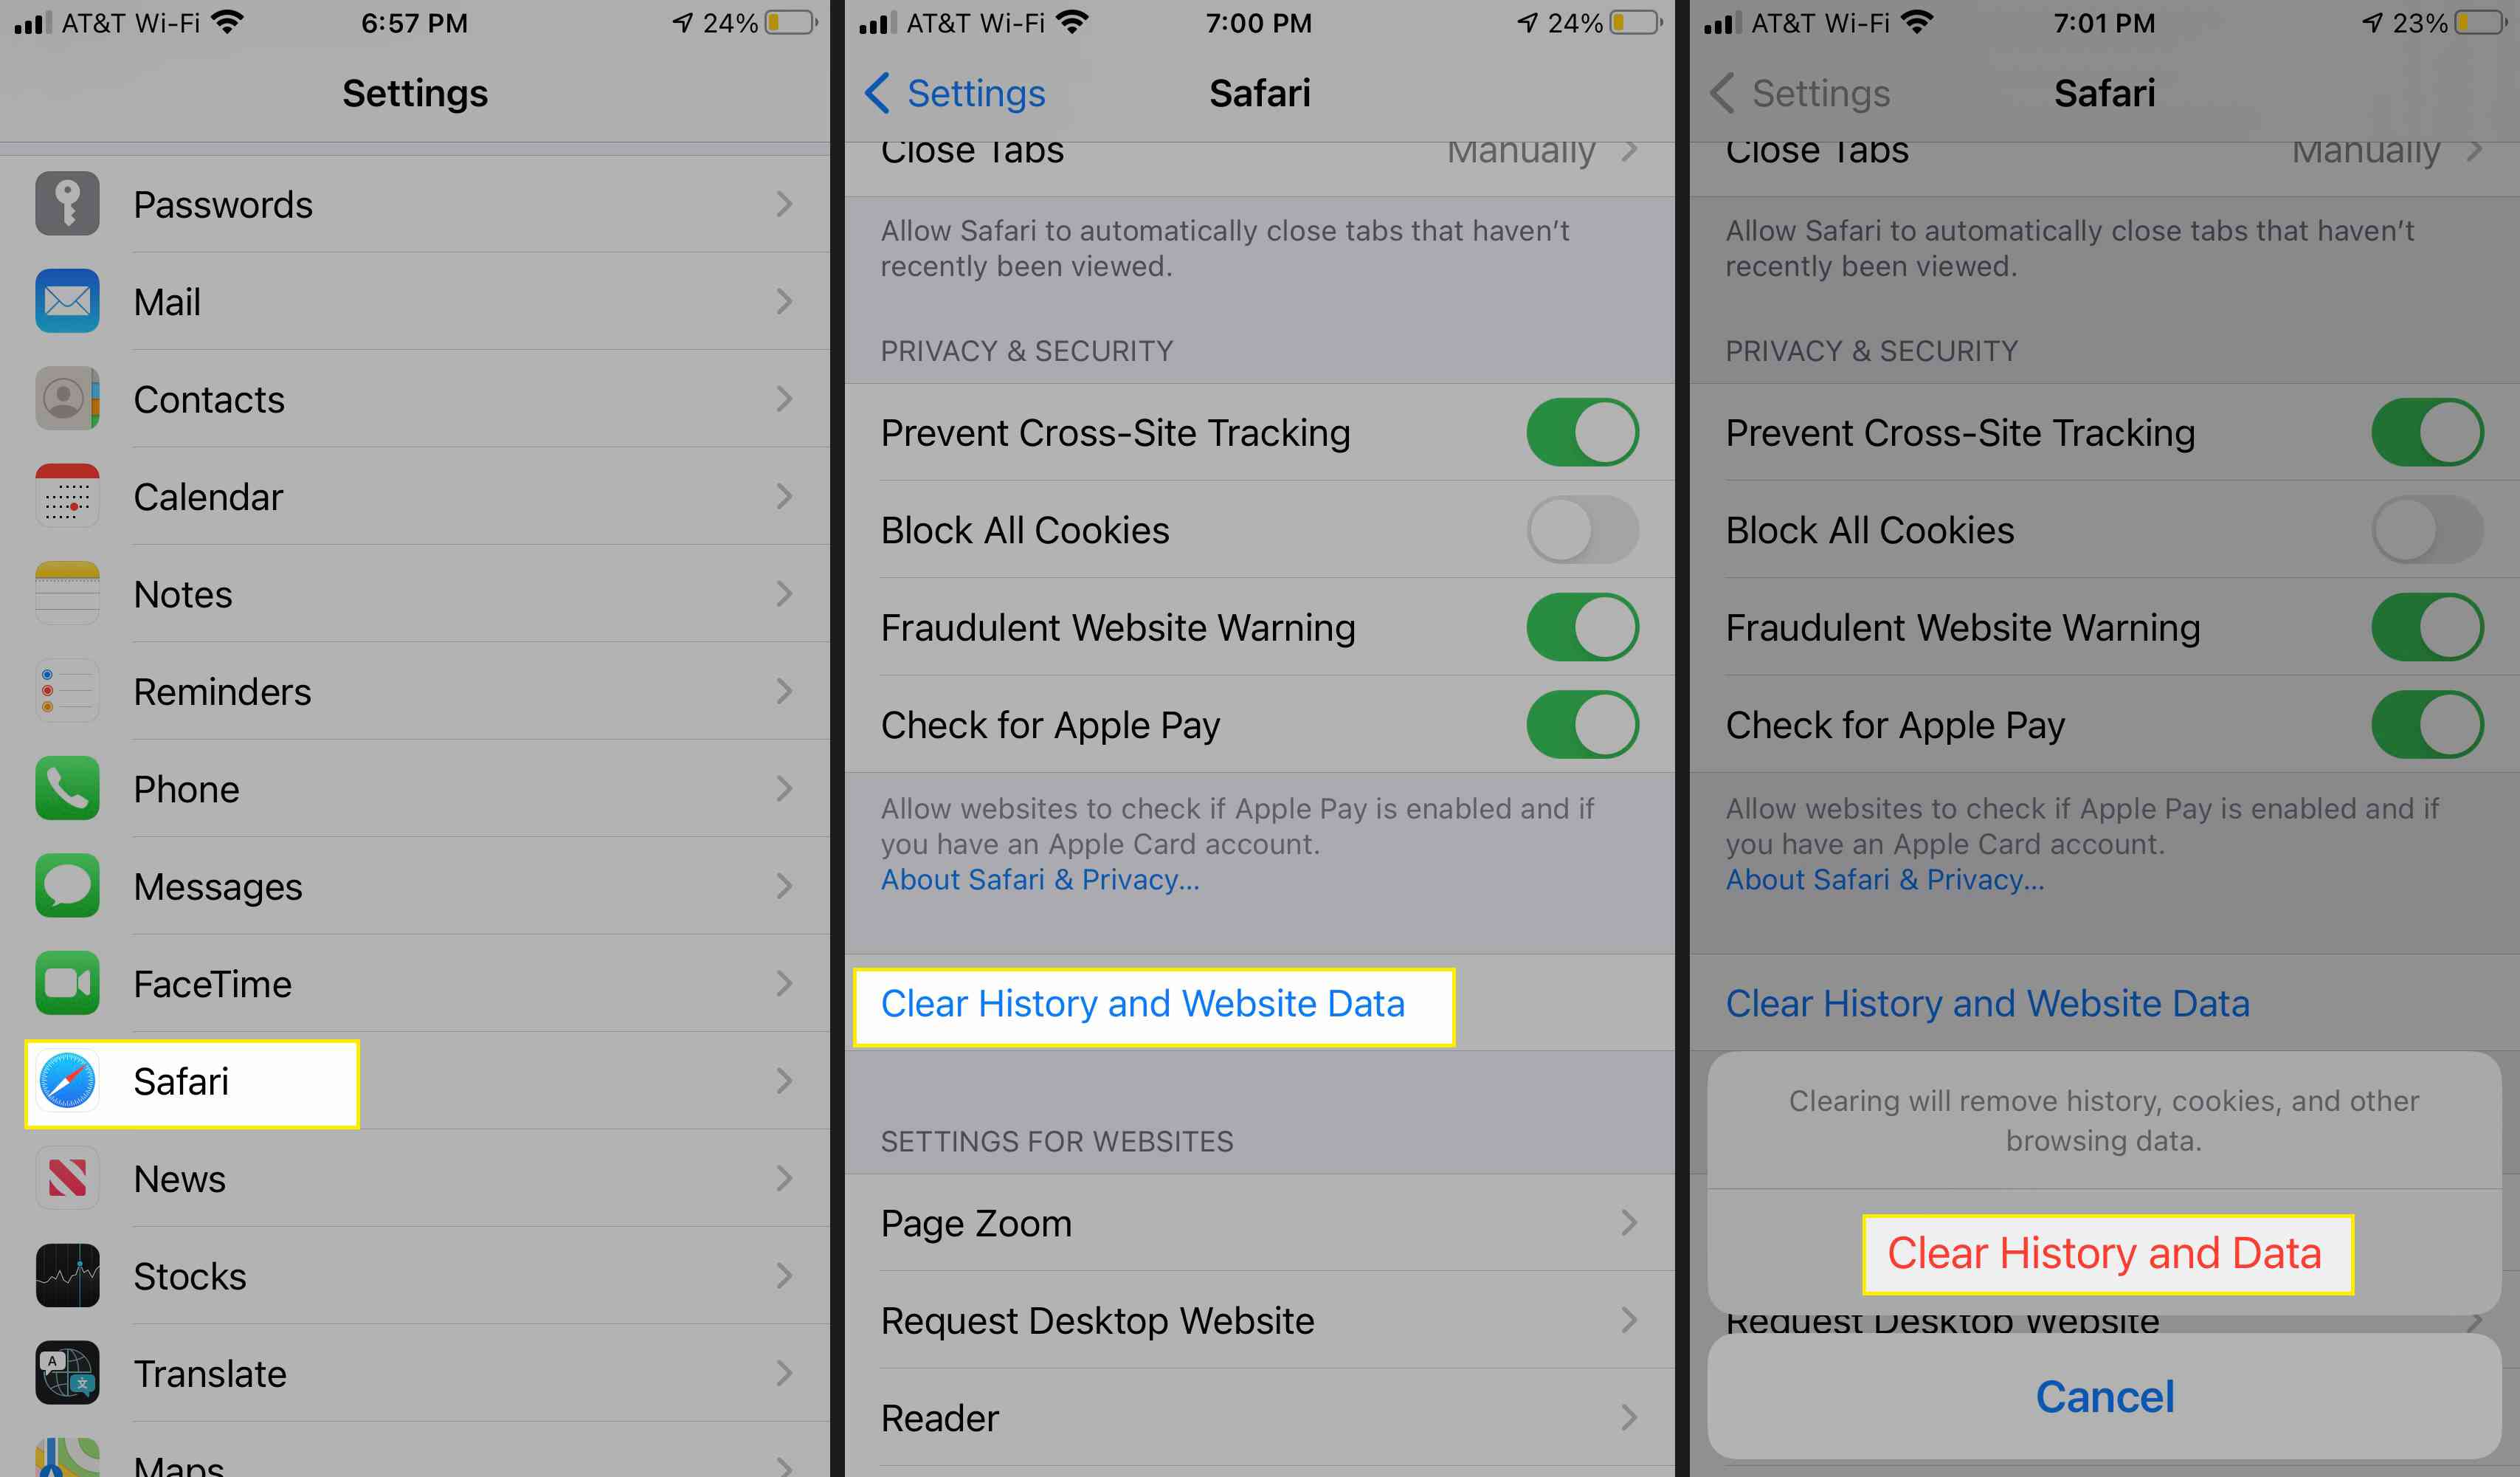 Vymazat historii a data webových stránek v Safari pro iOS